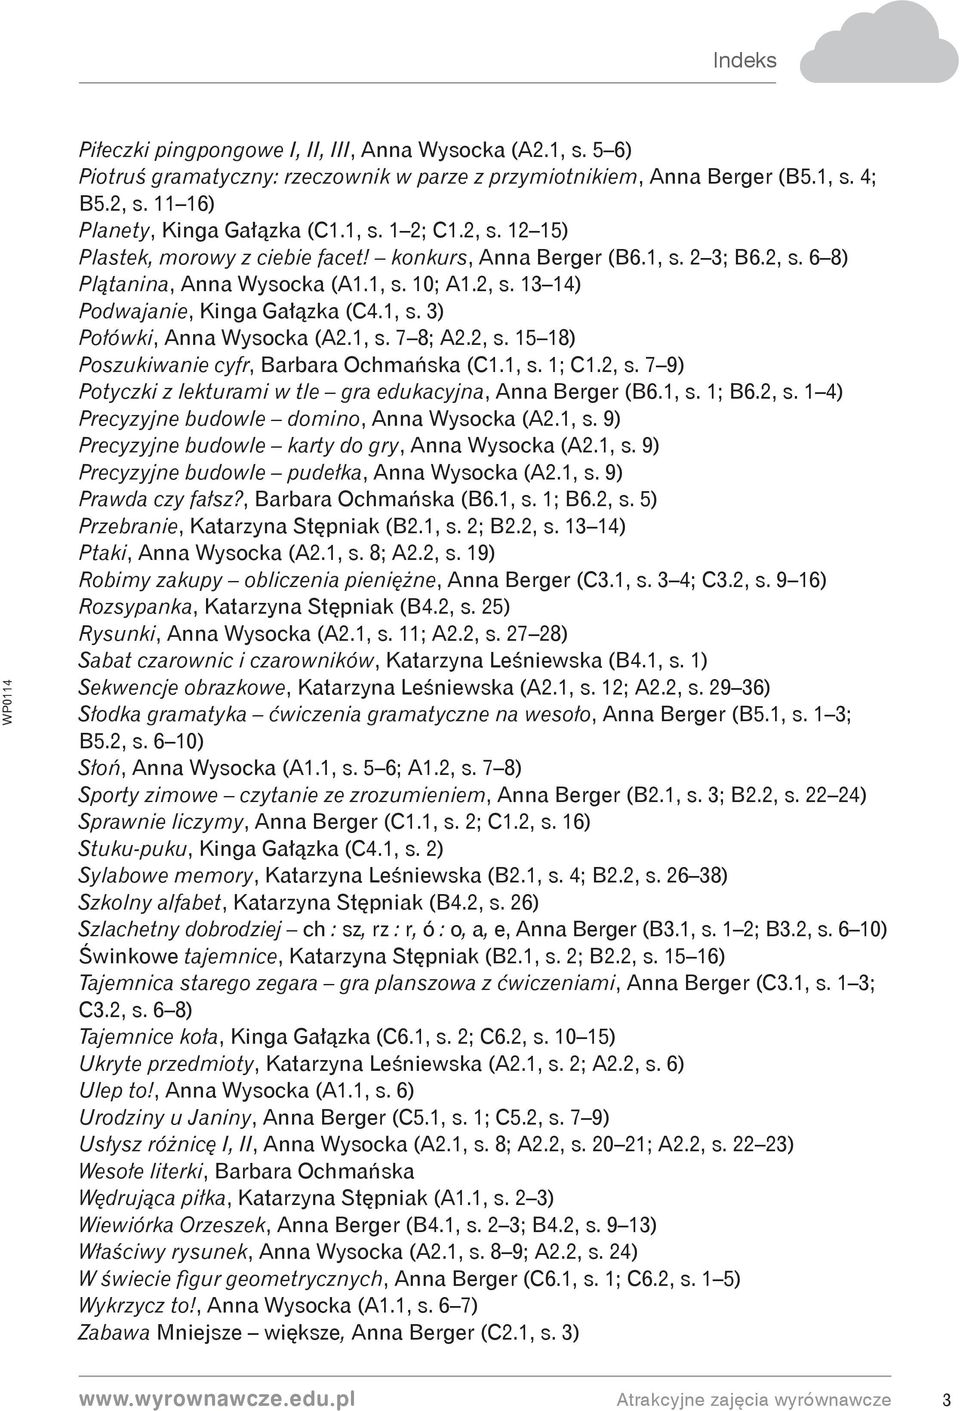 1, s. 7 8; A2.2, s. 15 18) Poszukiwanie cyfr, Barbara Ochmańska (C1.1, s. 1; C1.2, s. 7 9) Potyczki z lekturami w tle gra edukacyjna, Anna Berger (B6.1, s. 1; B6.2, s. 1 4) Precyzyjne budowle domino, Anna Wysocka (A2.